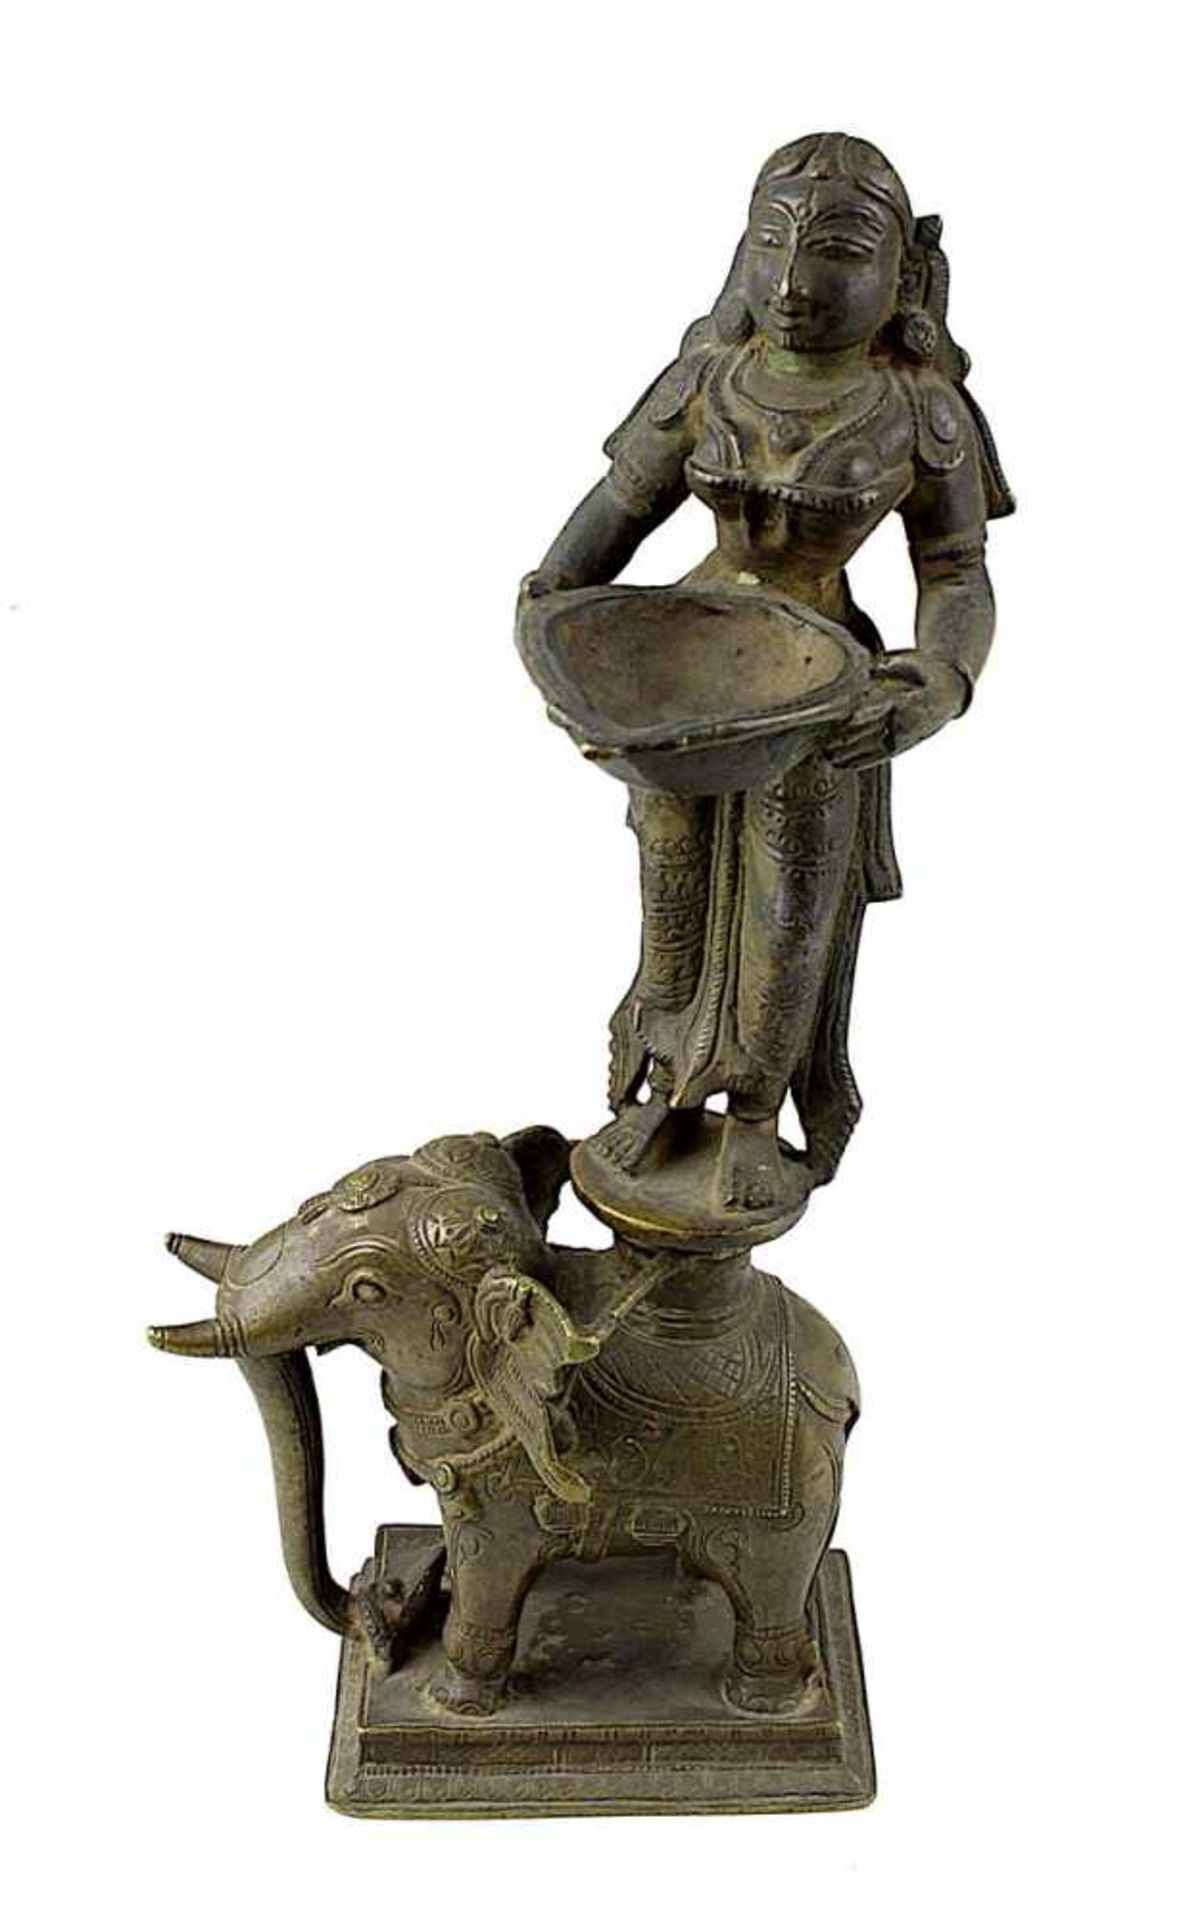 Öllampe in Form von Lakshmi auf einem Elefanten stehend, eine Schale haltend, fein ausgearbeitete